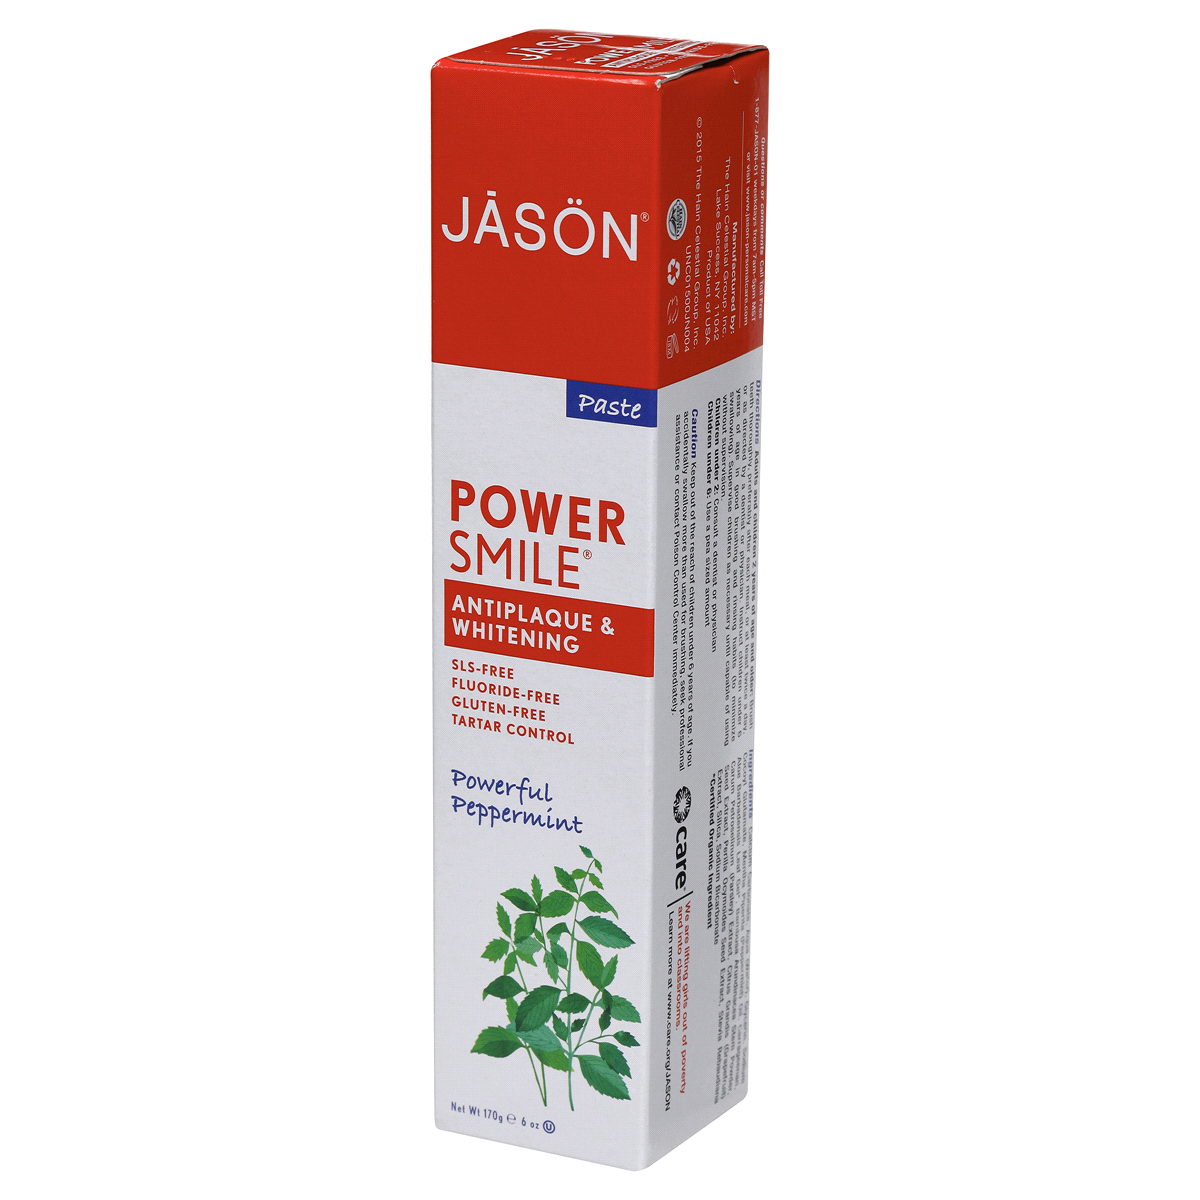 slide 3 of 7, Jason JĀSON Power Smile Powerful Peppermint Whitening Toothpaste 6 oz. Box, 6 oz